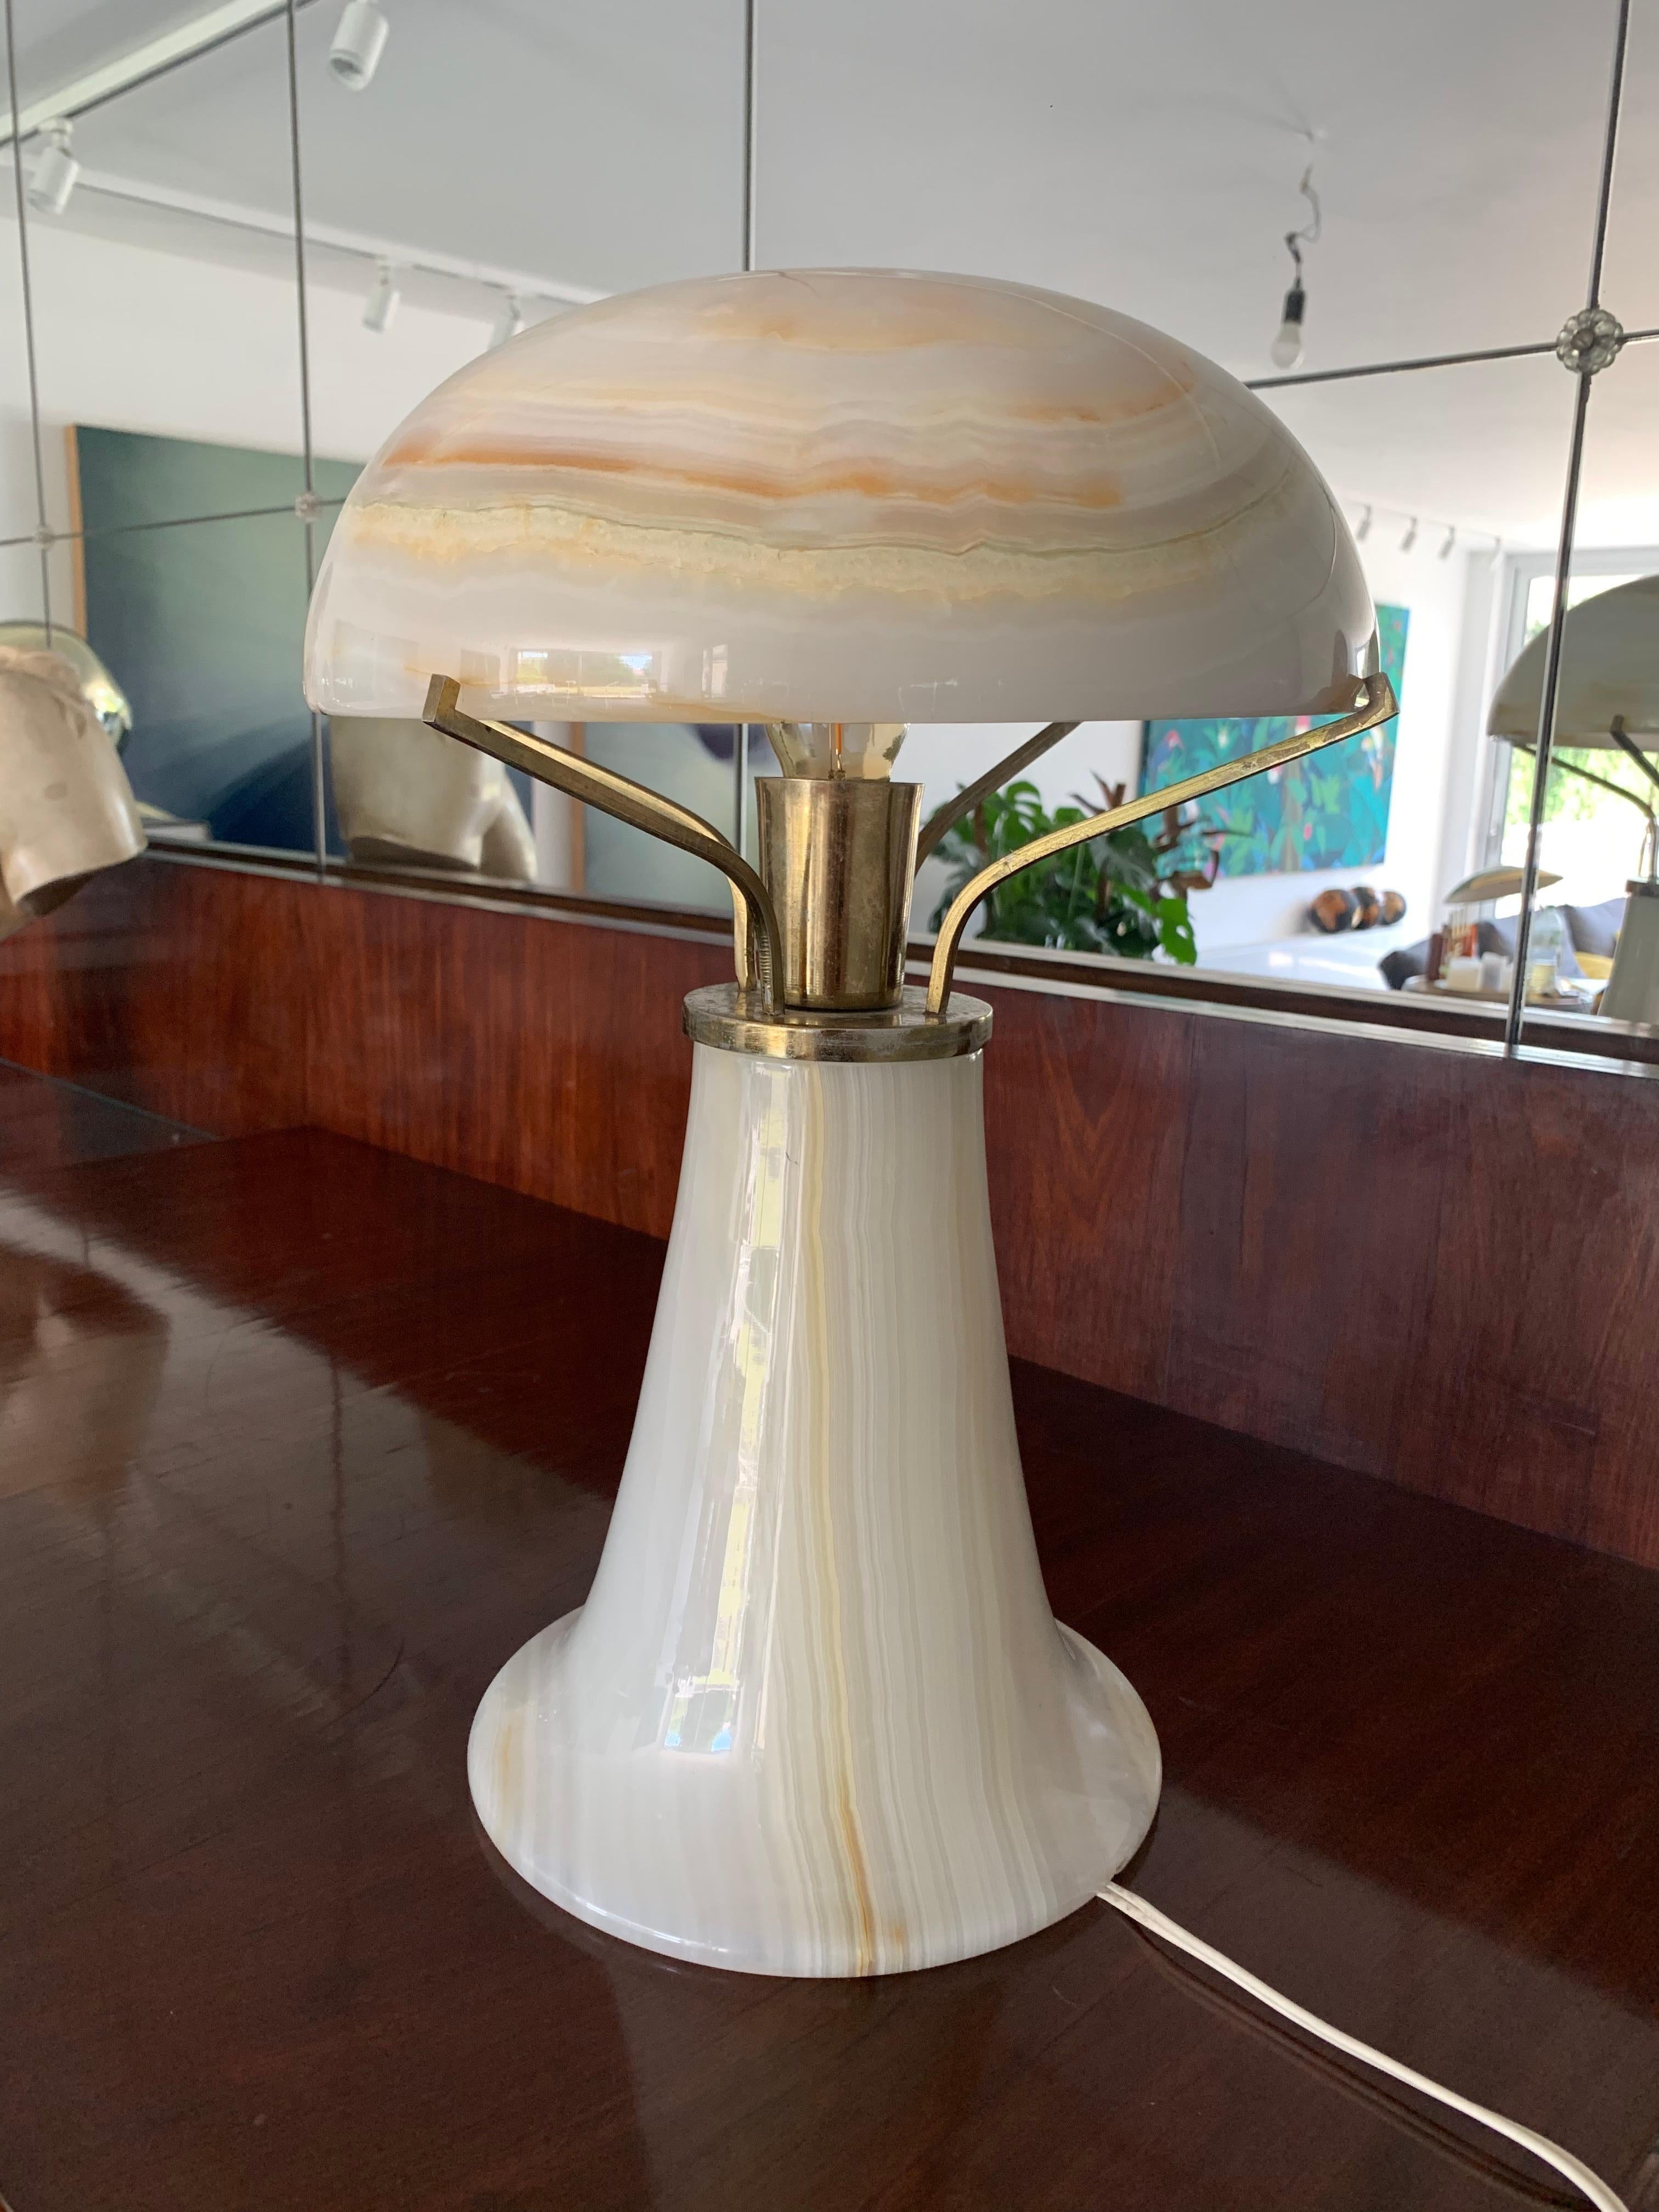 Dies ist eine originelle Art-Deco-Tischleuchte, die ein weiches Licht abgibt.
Sie ist ganz aus Onyx gefertigt - wenn das Licht eingeschaltet wird, scheint es sanft durch den Stein,
Erzeugt einen schönen Lichteffekt.